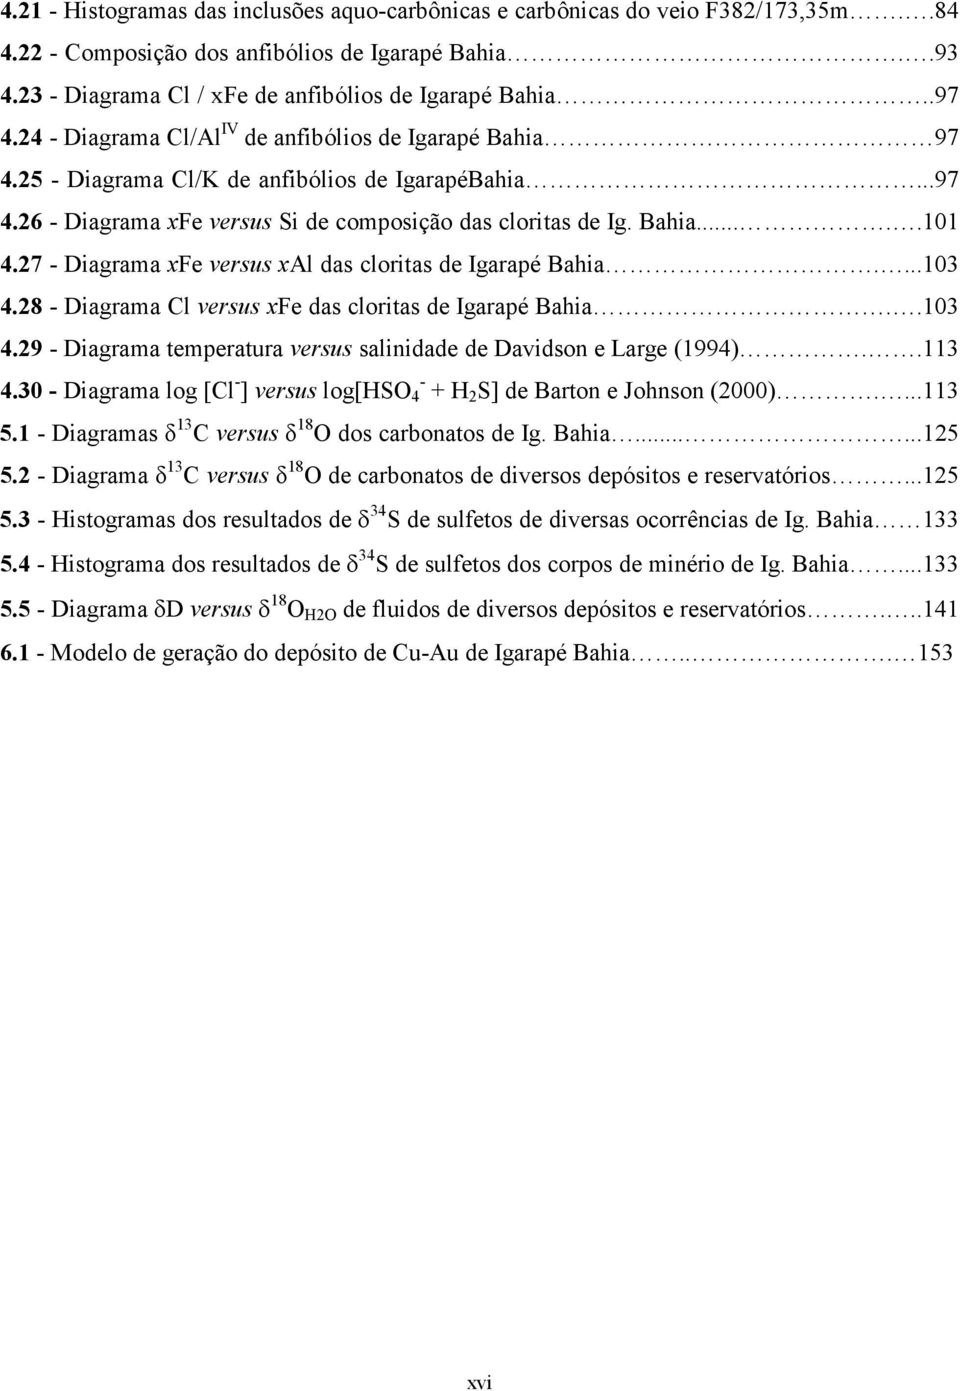 27 - Diagrama xfe versus xal das cloritas de Igarapé Bahia....103 4.28 - Diagrama Cl versus xfe das cloritas de Igarapé Bahia..103 4.29 - Diagrama temperatura versus salinidade de Davidson e Large (1994).